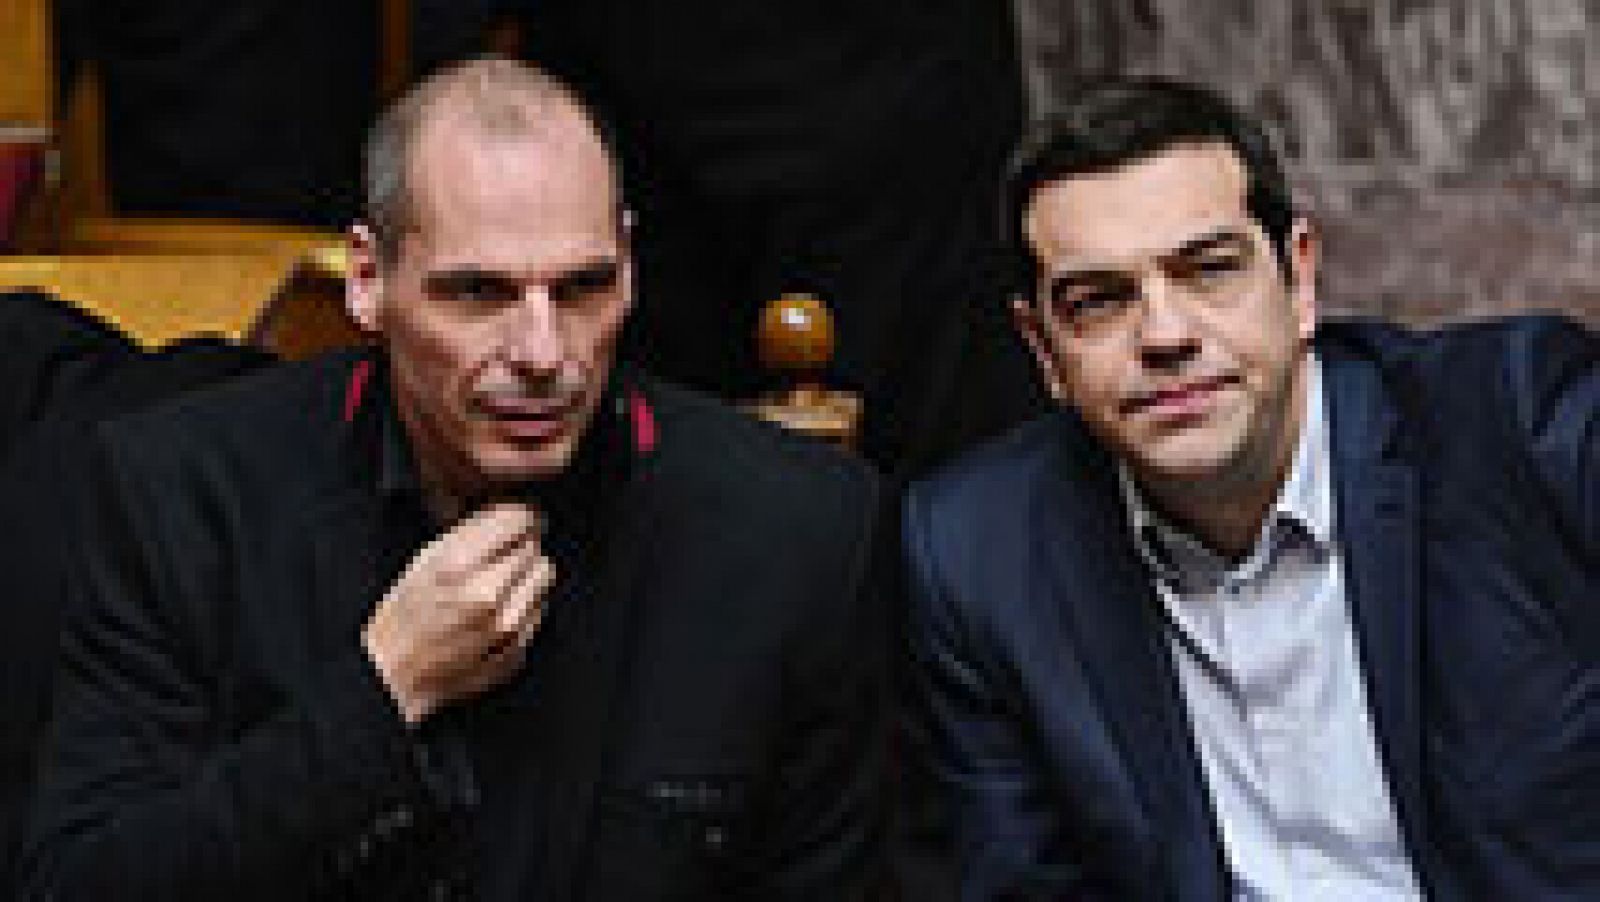 Grecia trabaja en las reformas que debe presentar a sus socios europeos